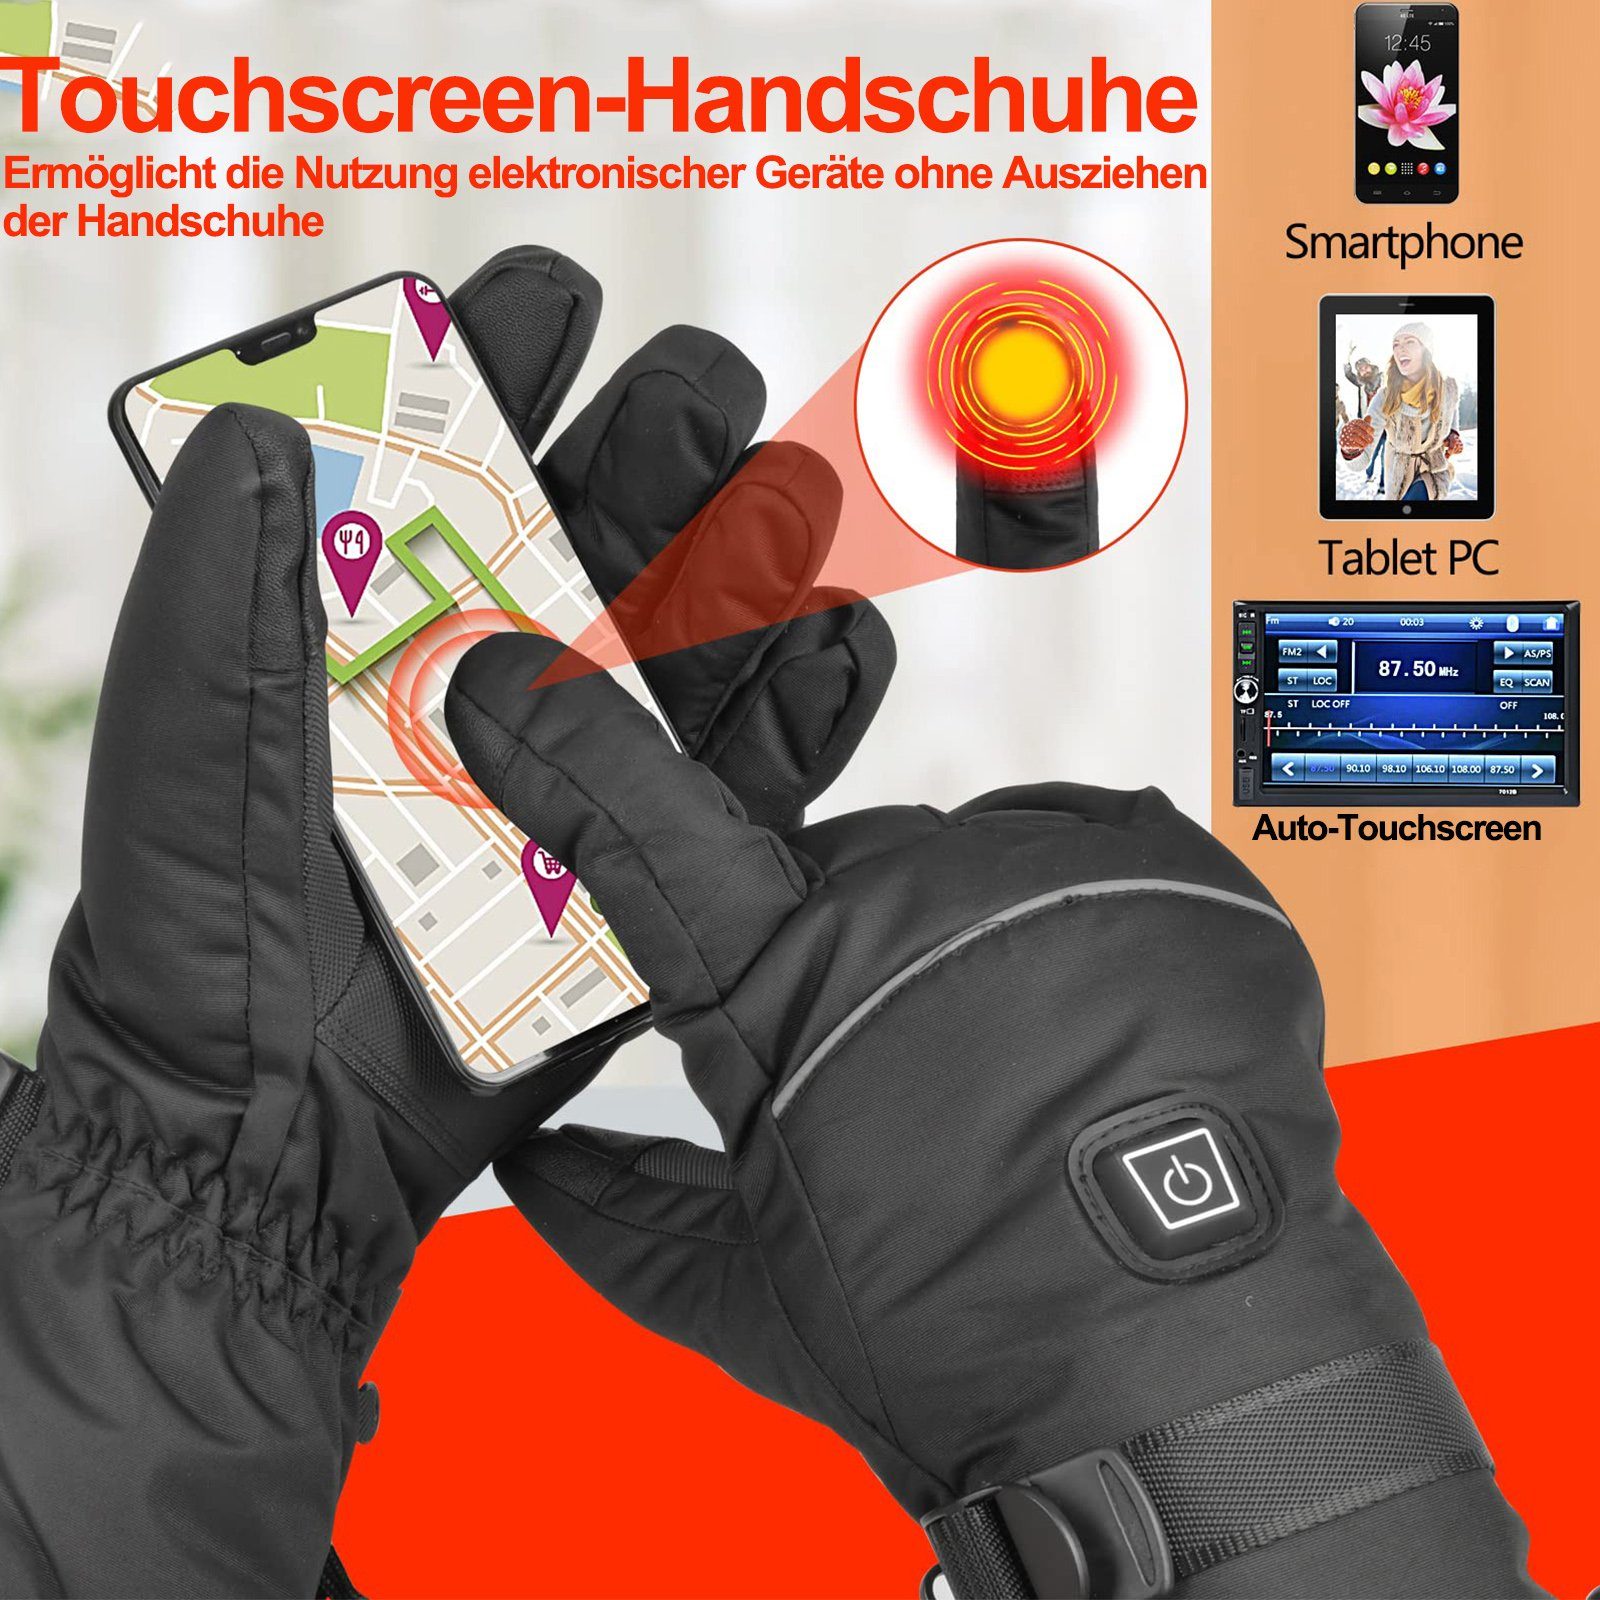 Touchscreen-Handschuhe Beheizte Temperatur Handschuhe Fahrradhandschuhe 3AA-Batterie Damen&Herren Thermo für Wasser Schwarz BTTO Handschuhe Sporthandschuhe Winter 3